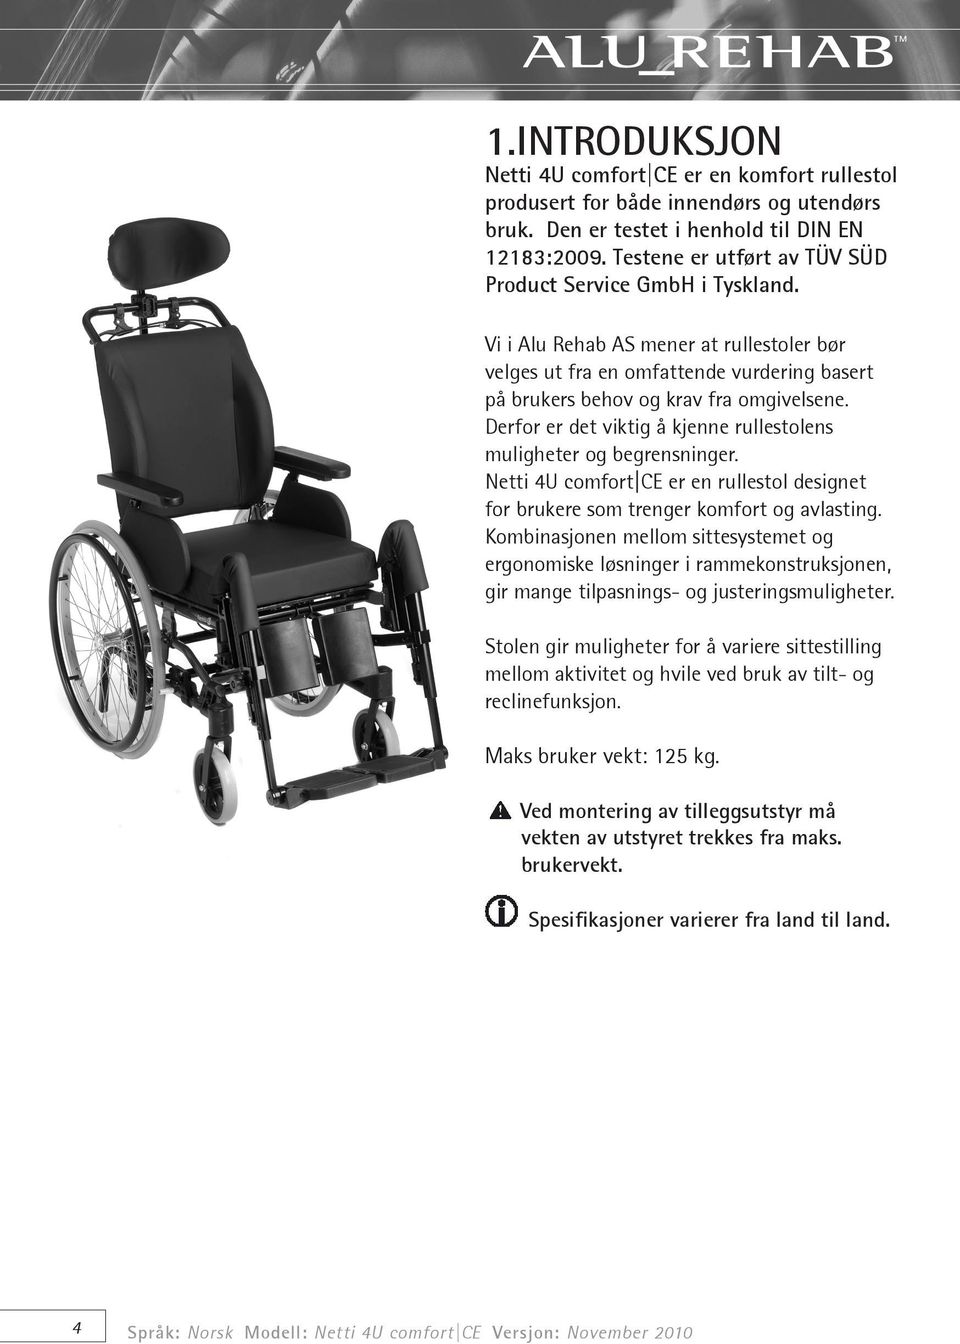 Derfor er det viktig å kjenne rullestolens muligheter og begrensninger. Netti 4U comfort CE er en rullestol designet for brukere som trenger komfort og avlasting.